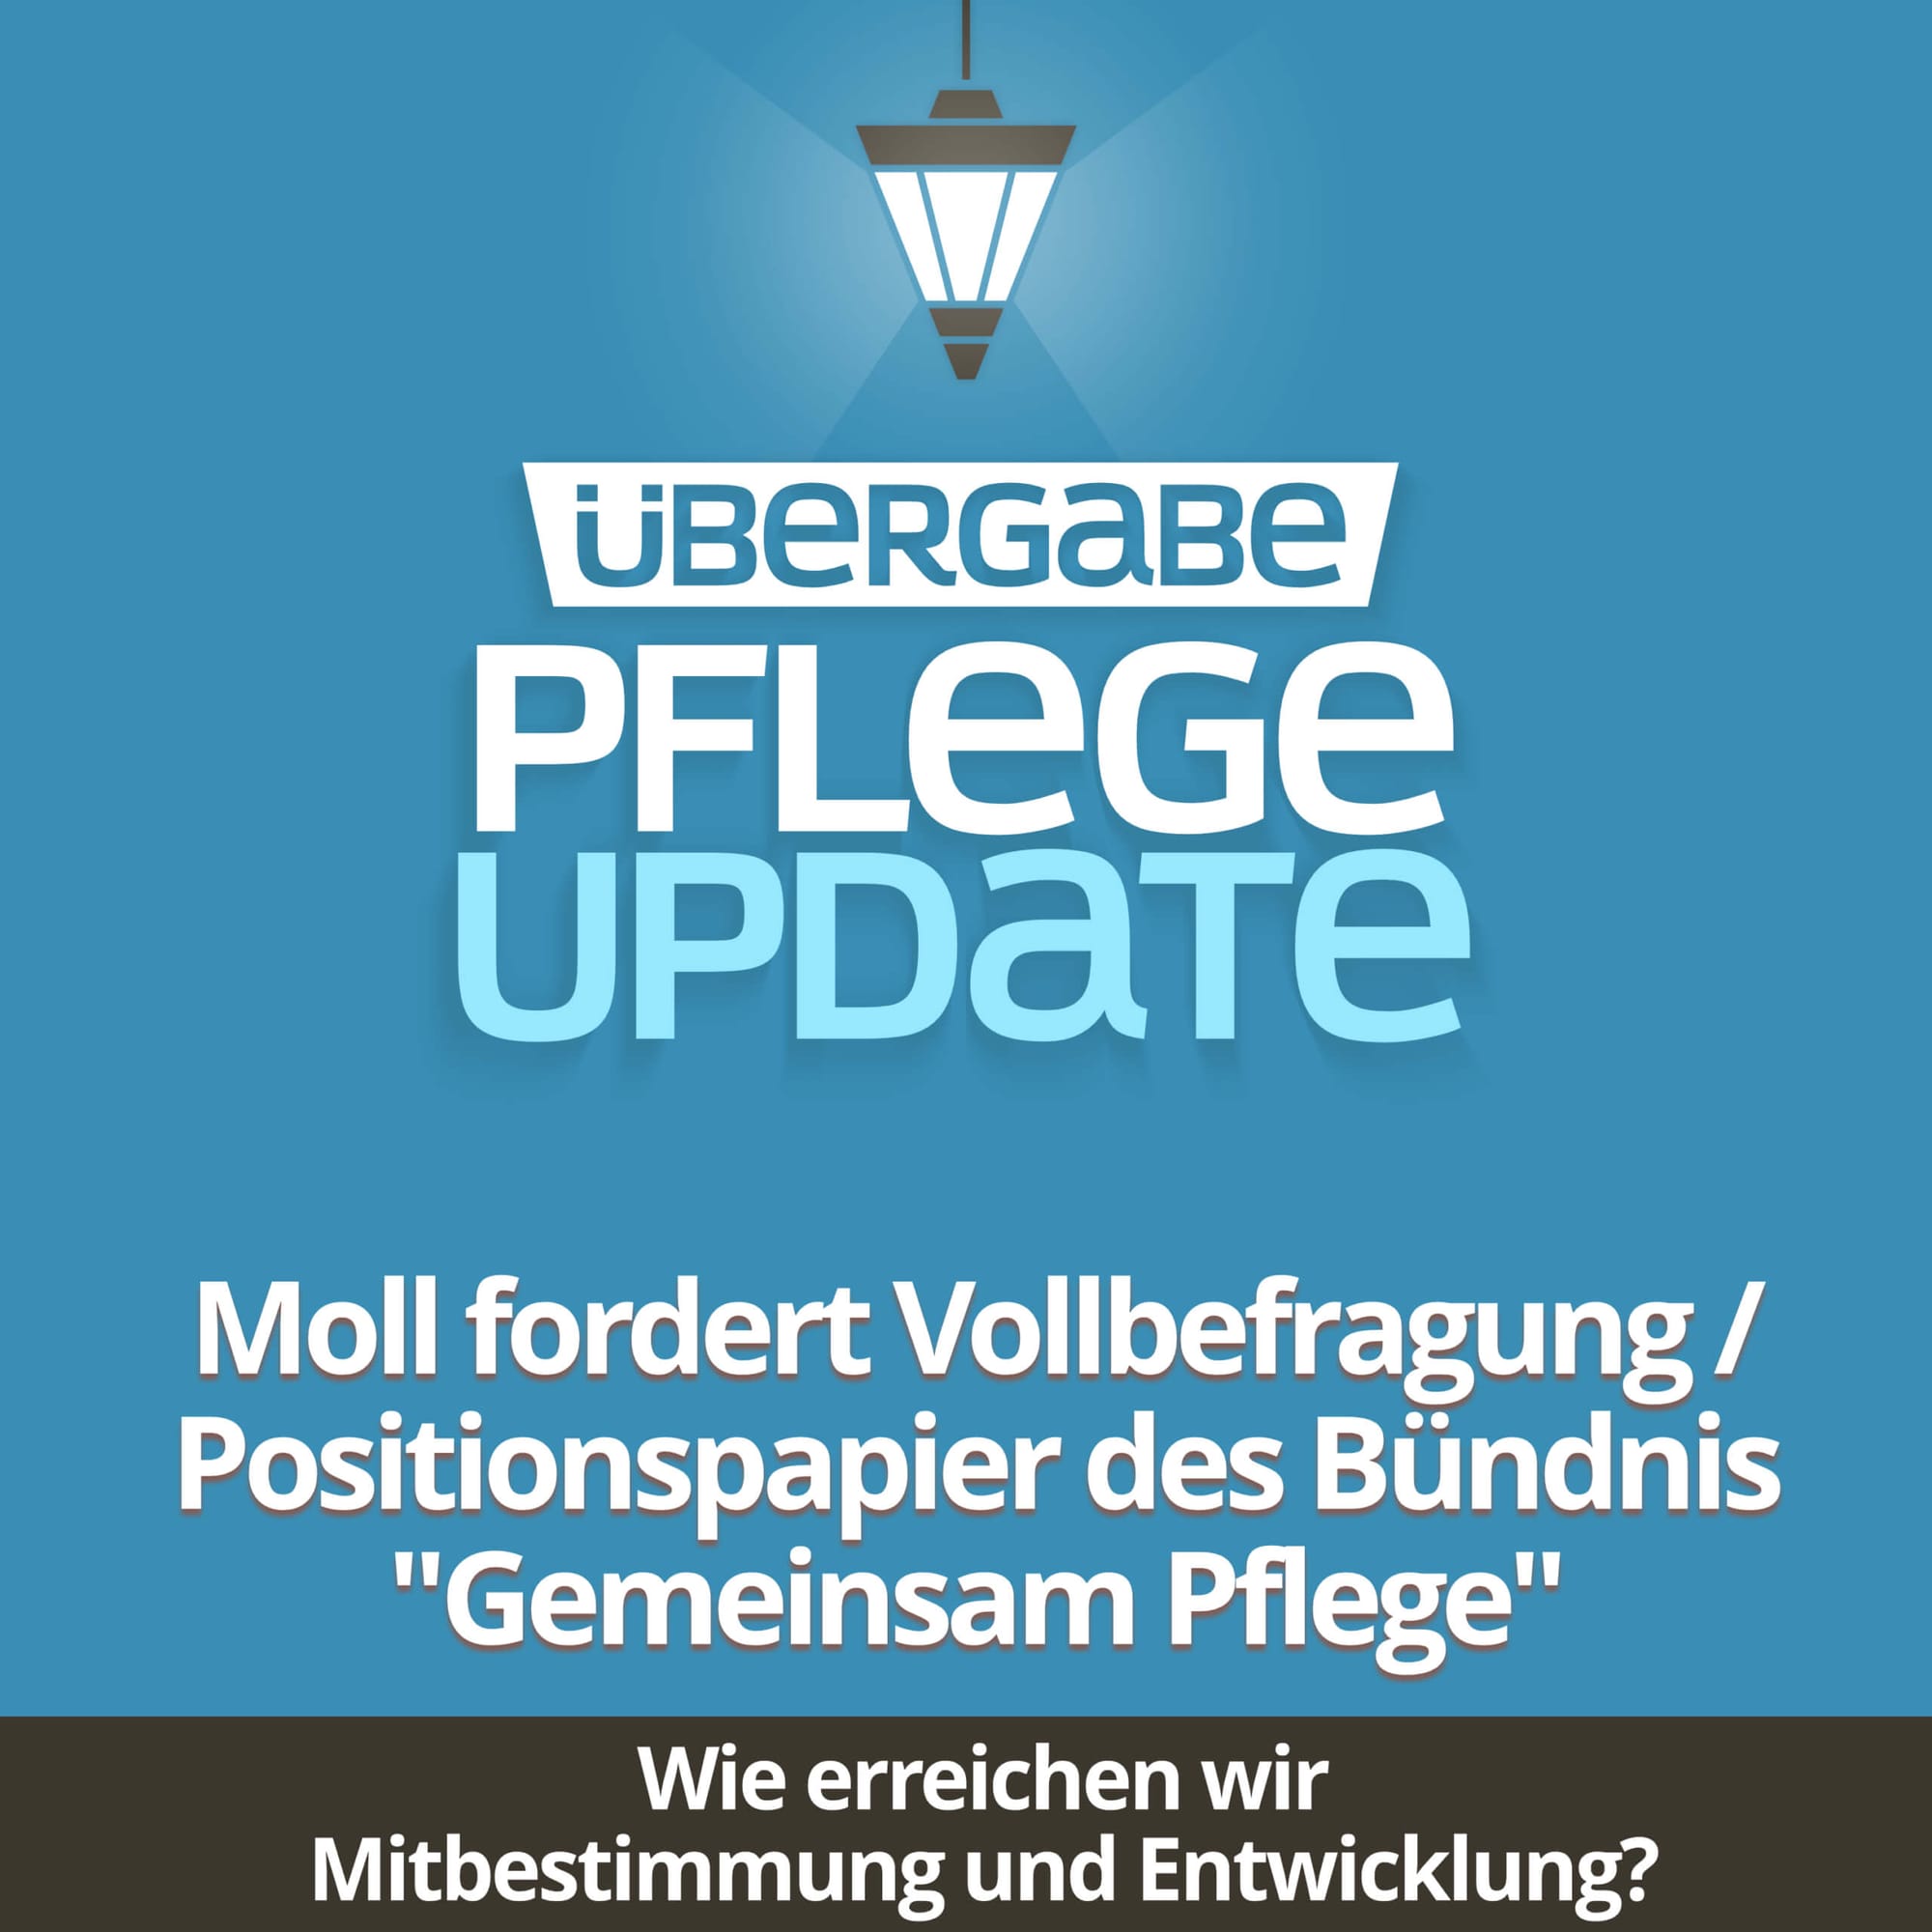 PU024 - Moll fordert Vollbefragung / Positionspapier des Bündnis "Gemeinsam Pflege"